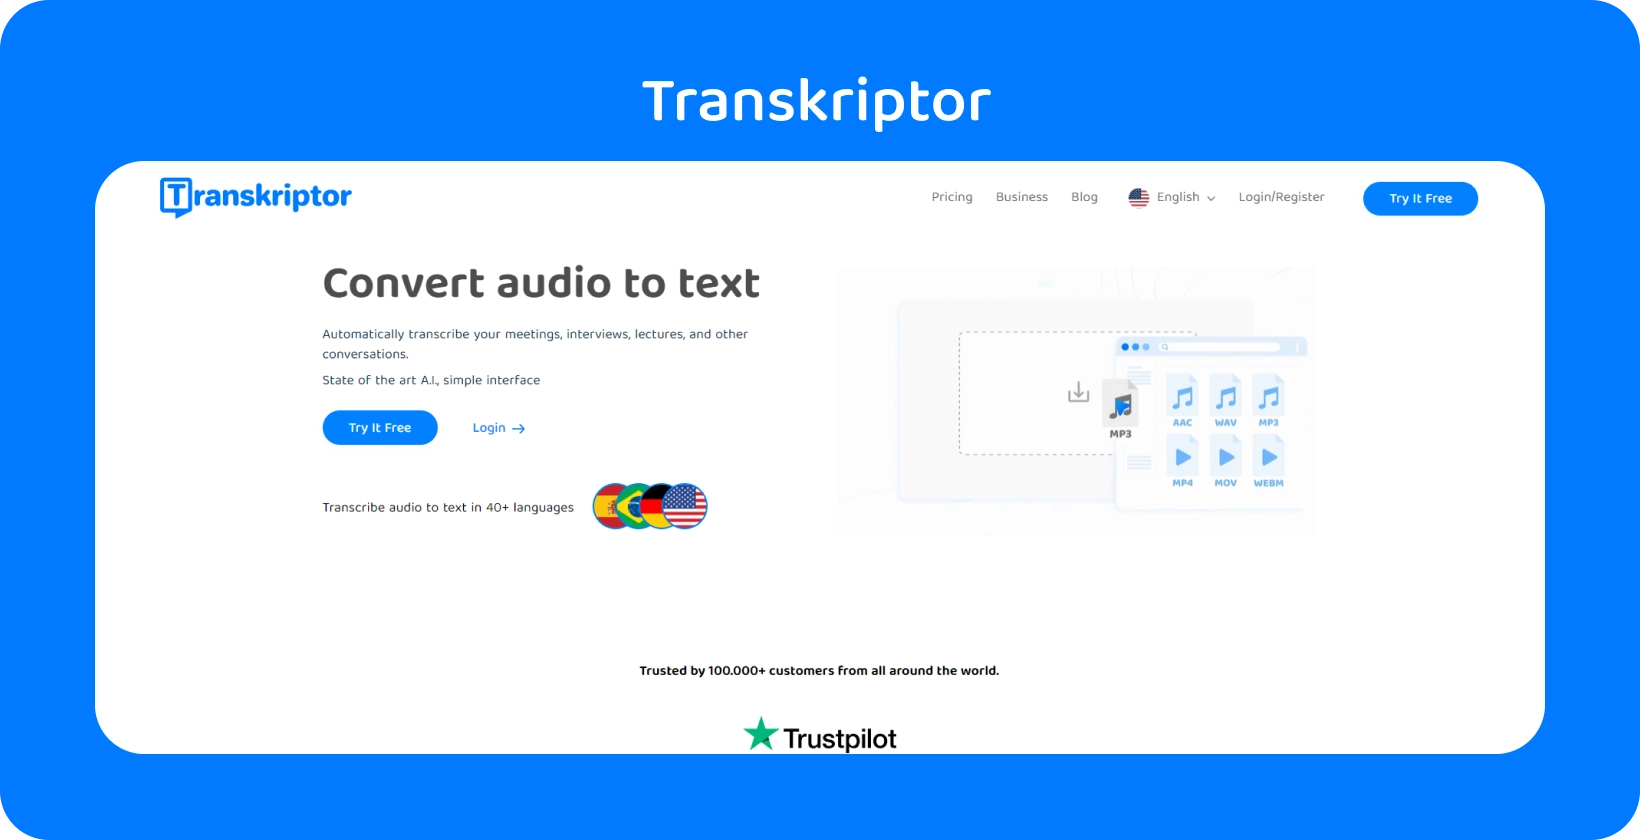 Kuvakaappaus Transkriptor-transkriptio-ohjelmiston käyttöliittymästä, jossa näkyy dialogin transkriptio.